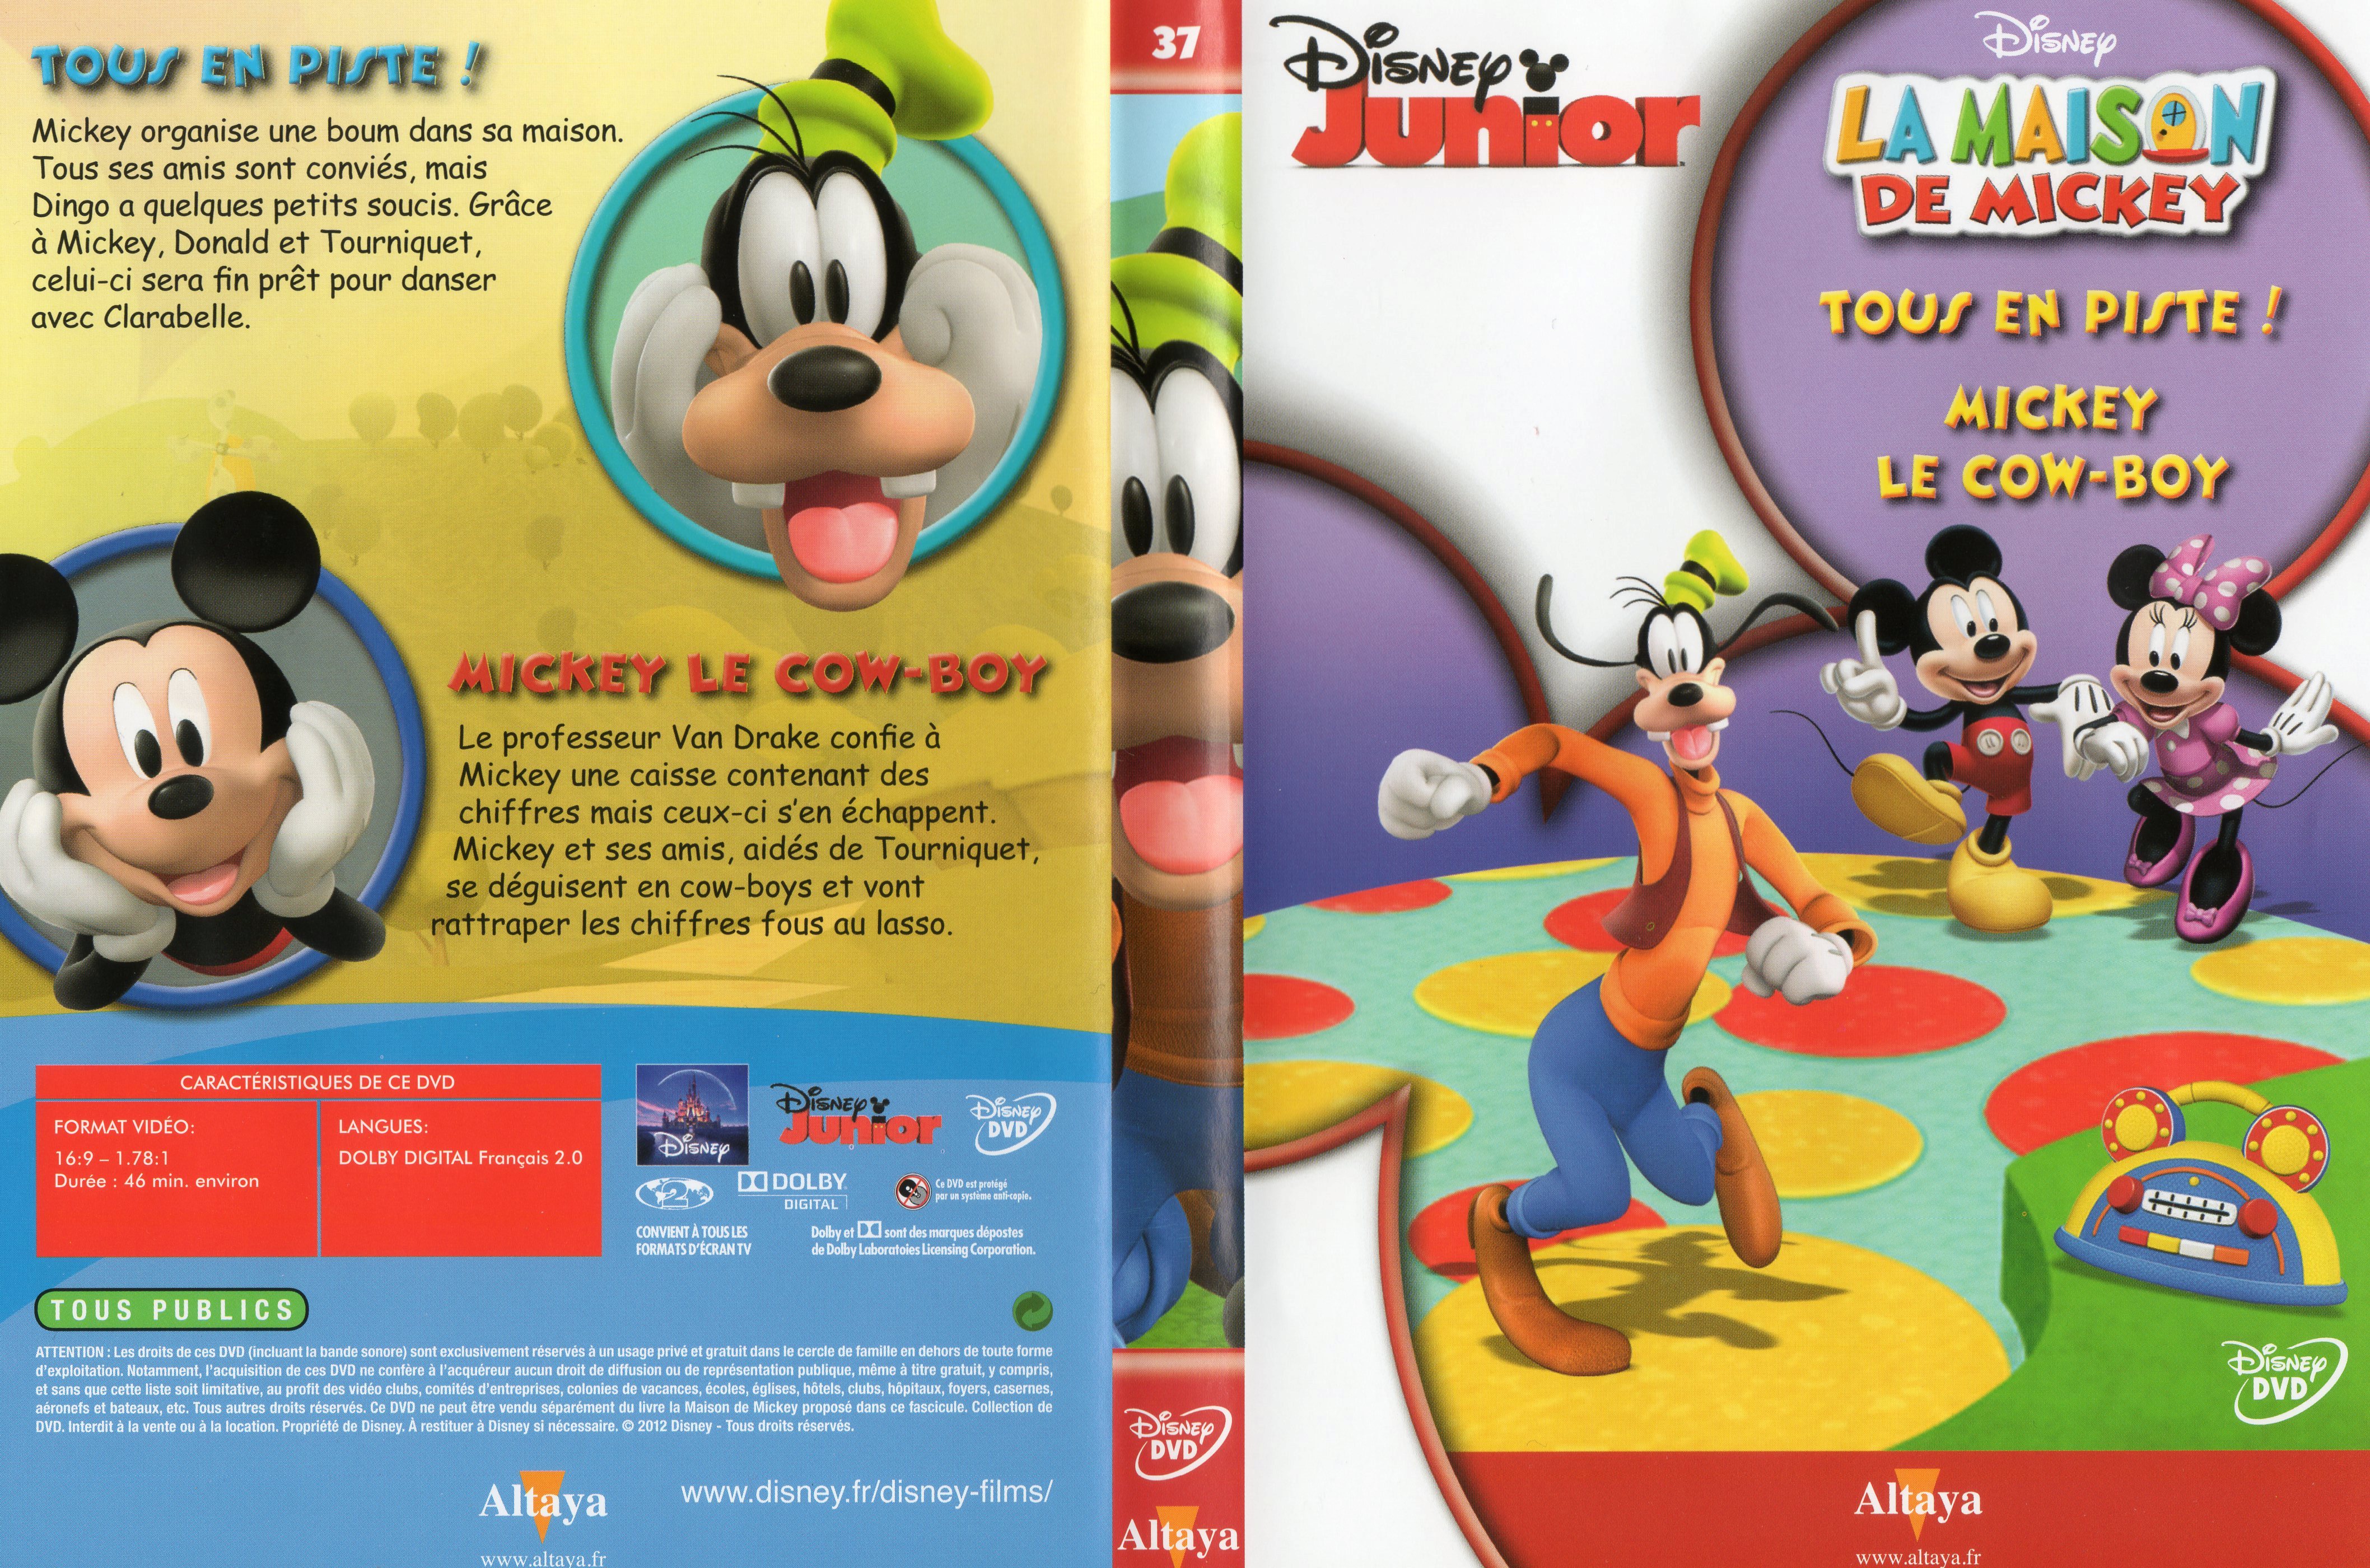 Jaquette DVD La maison de Mickey DVD 37